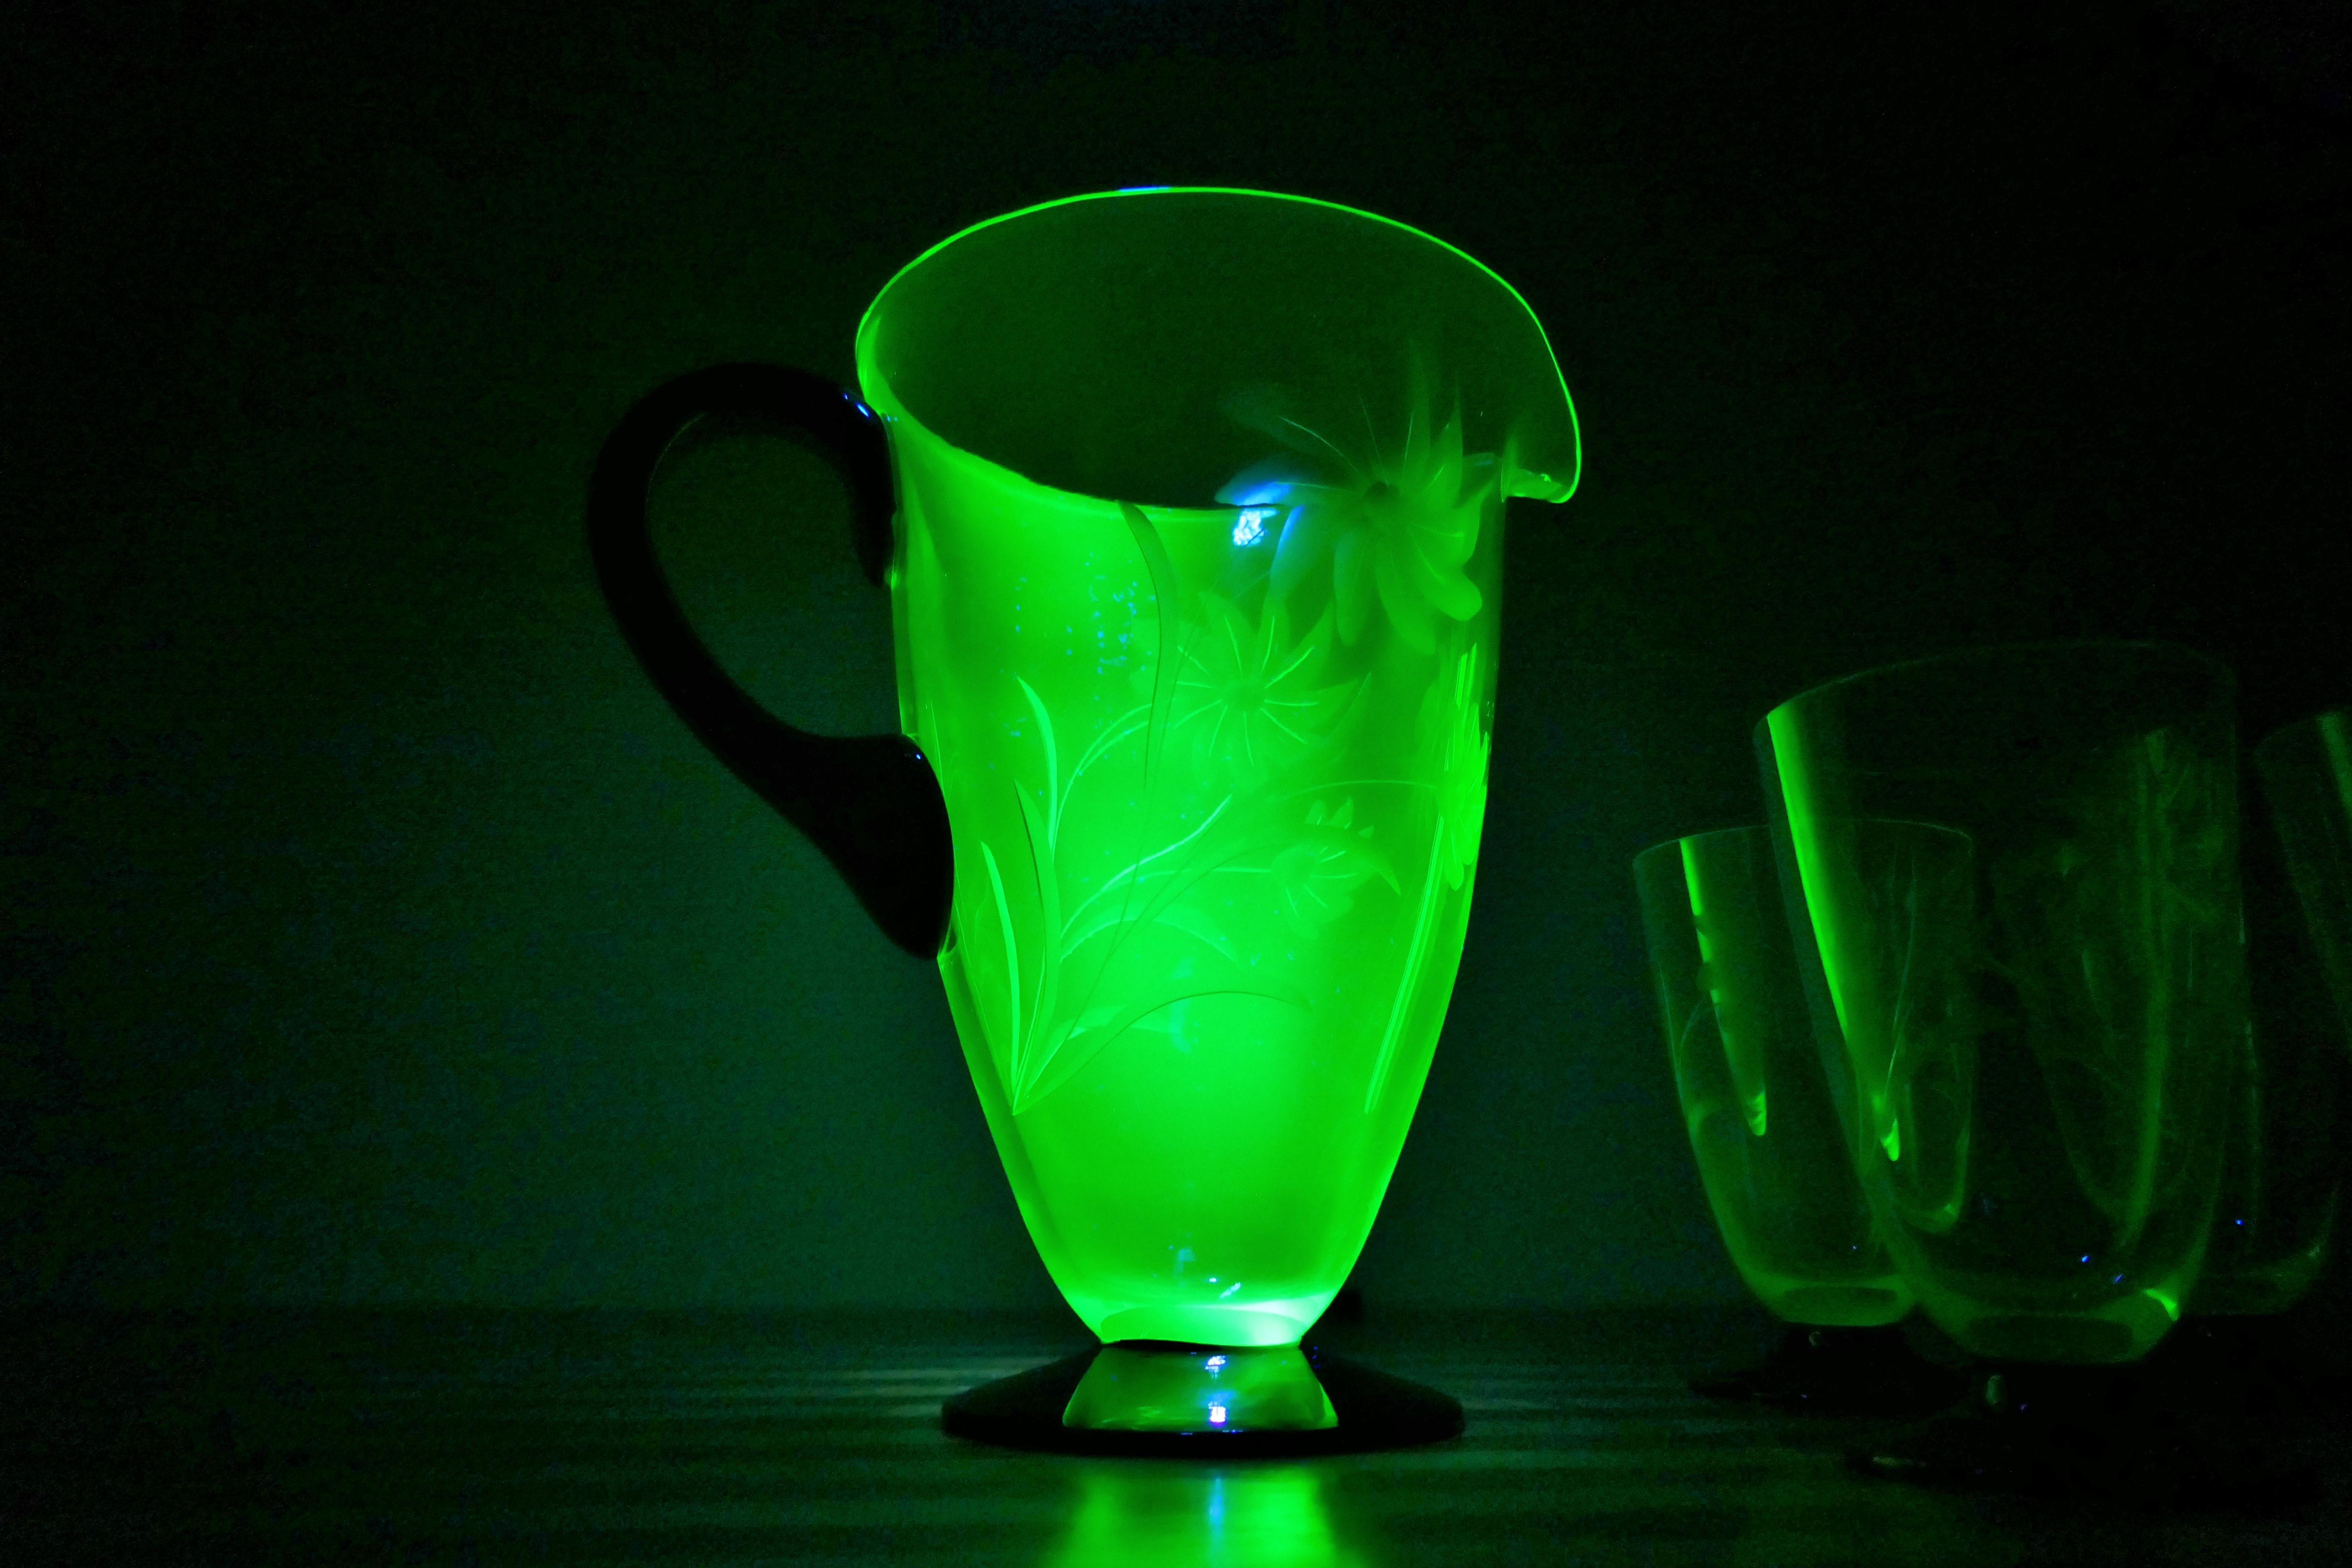 Una caraffa e cinque bicchieri molati.
Uranium glass Murano
Buone condizioni.
Grazie 